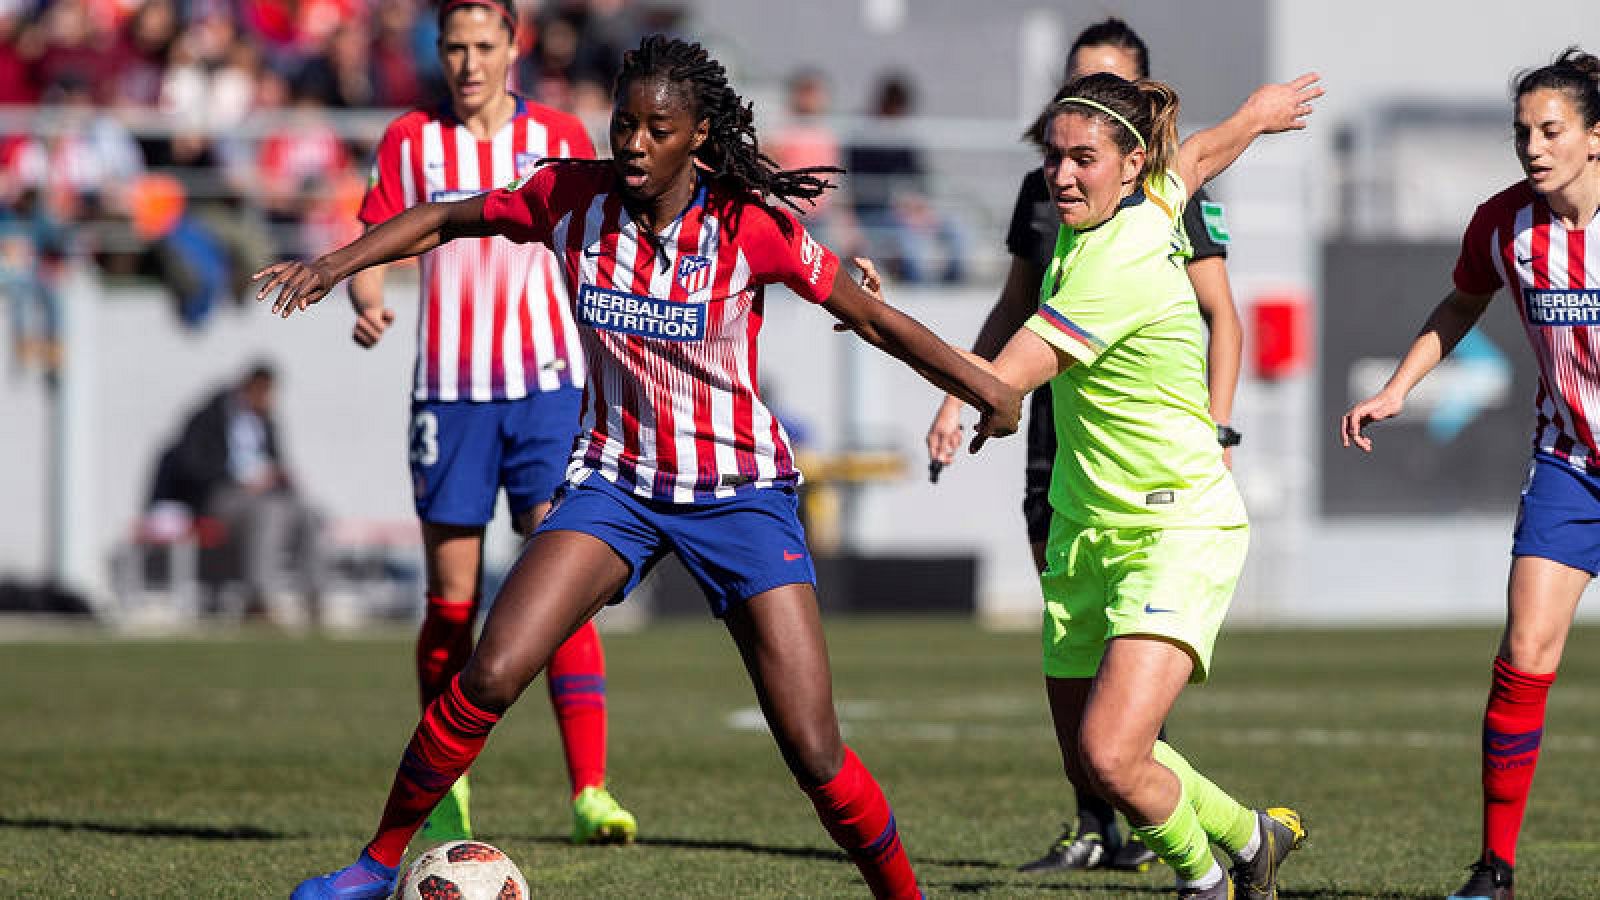 Los 16 clubes de la liga femenina se inscriben la Primera División Pro - rtve.es